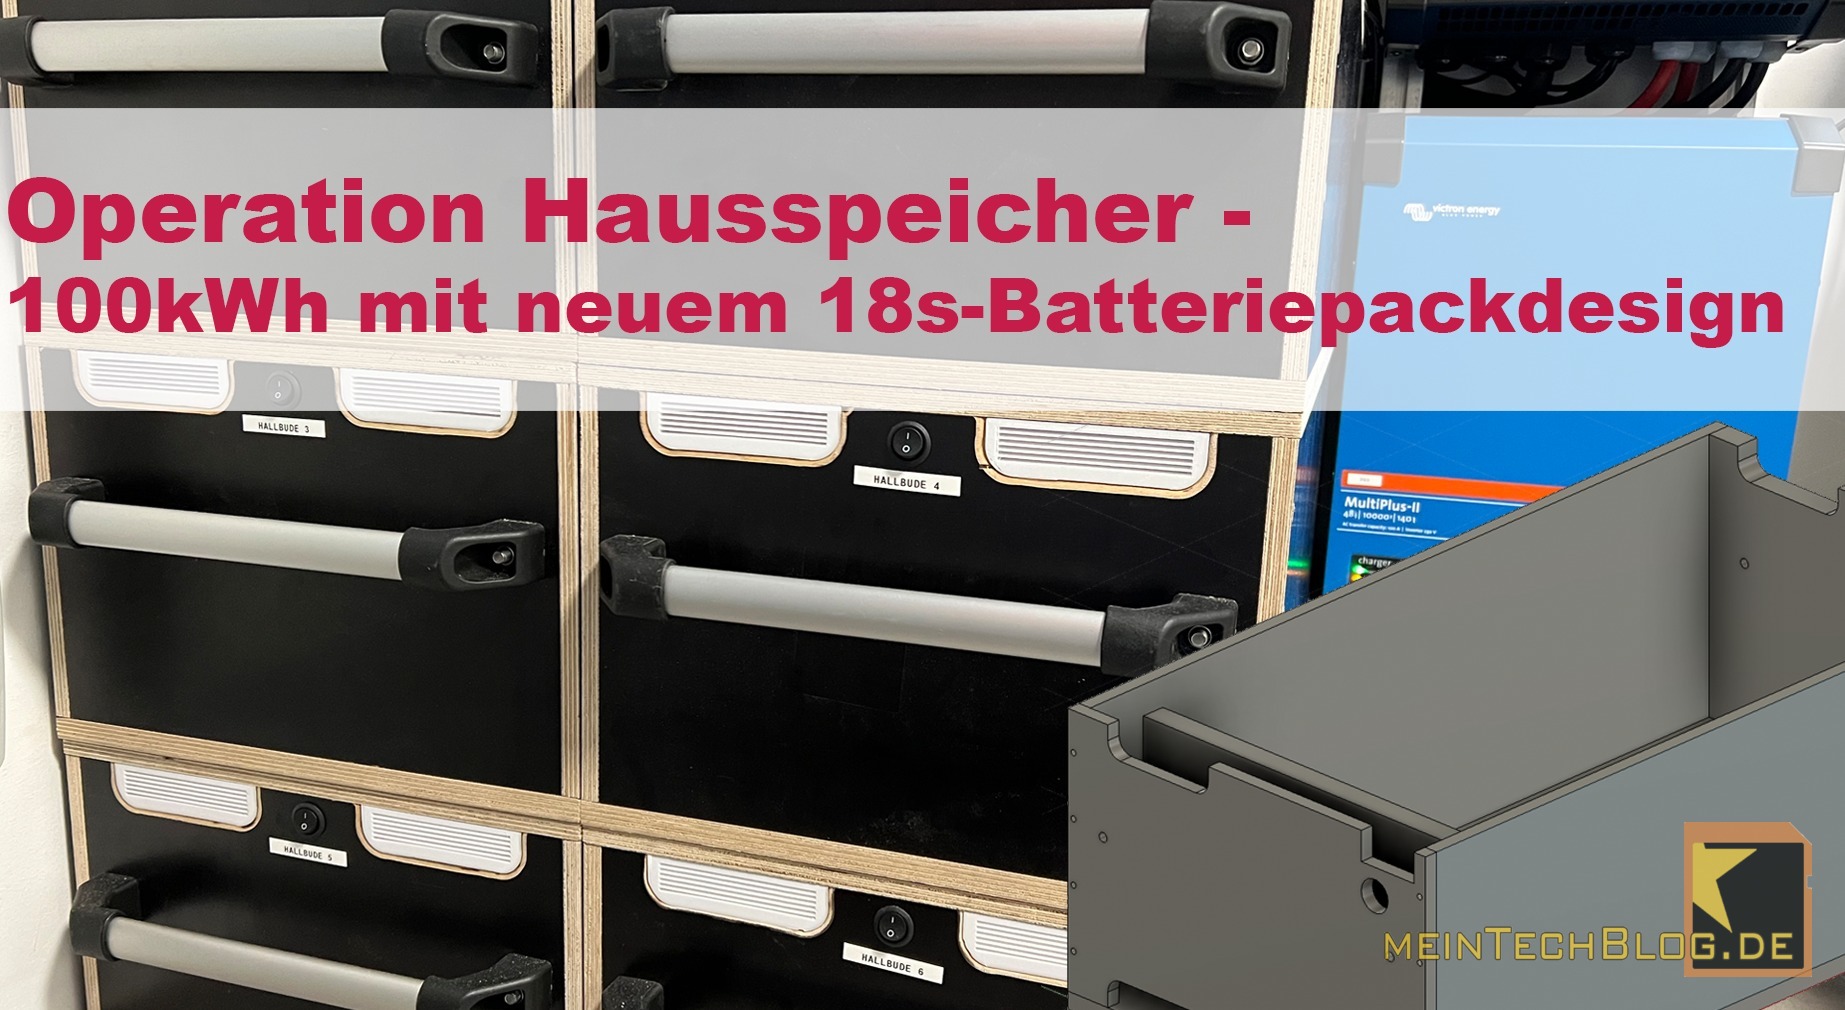 Operation Hausspeicher - 100kWh mit neuem 18s-Batteriepackdesign 